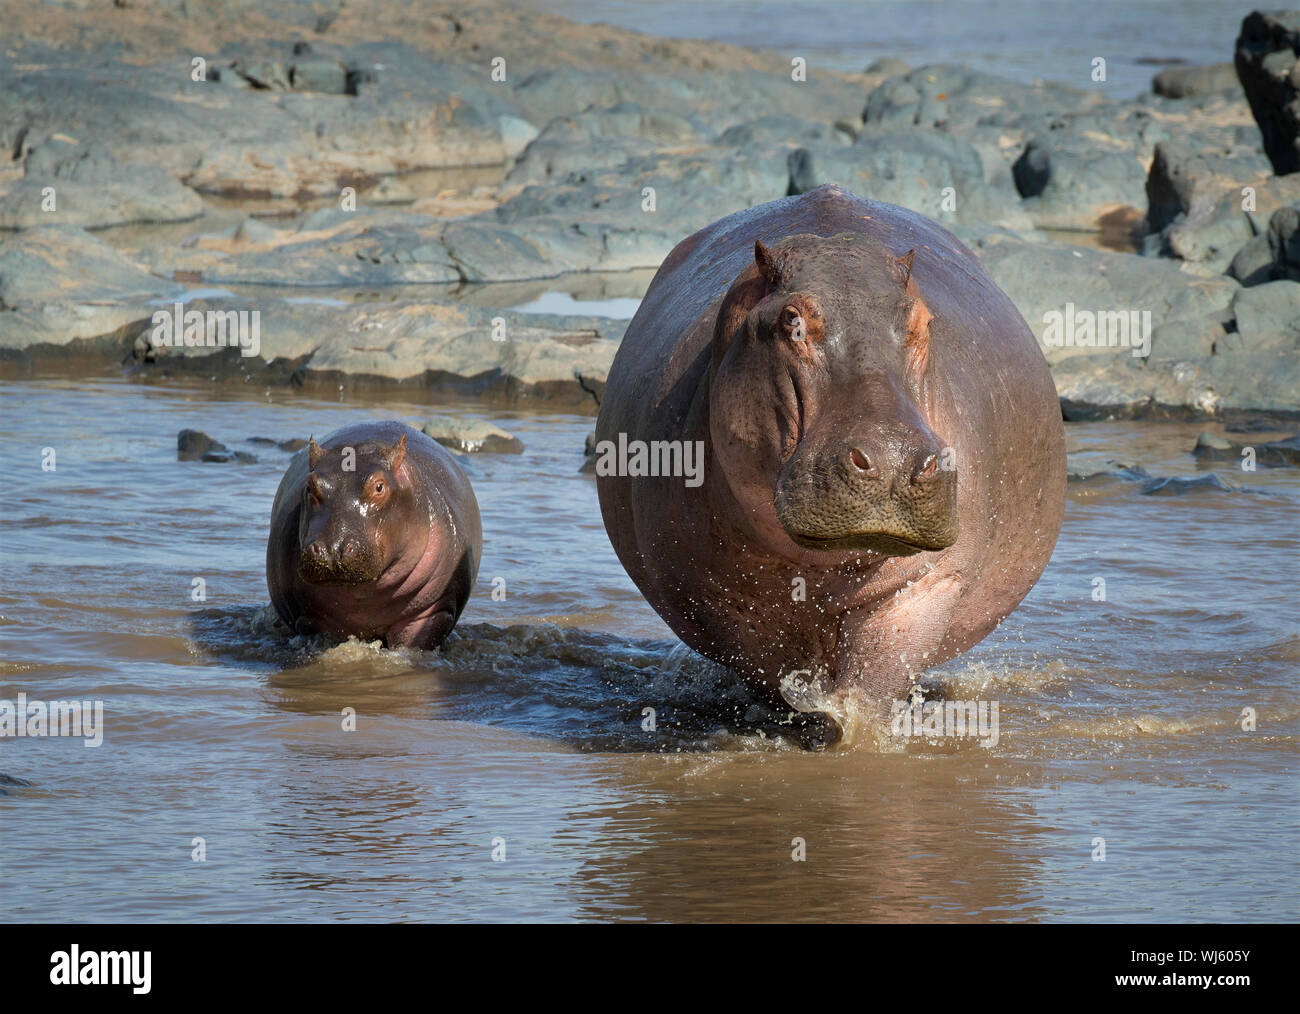 Hippopotamus (Hippopotamus amphibius) mother and young, Serengeti National Park, Tanzania. Stock Photo